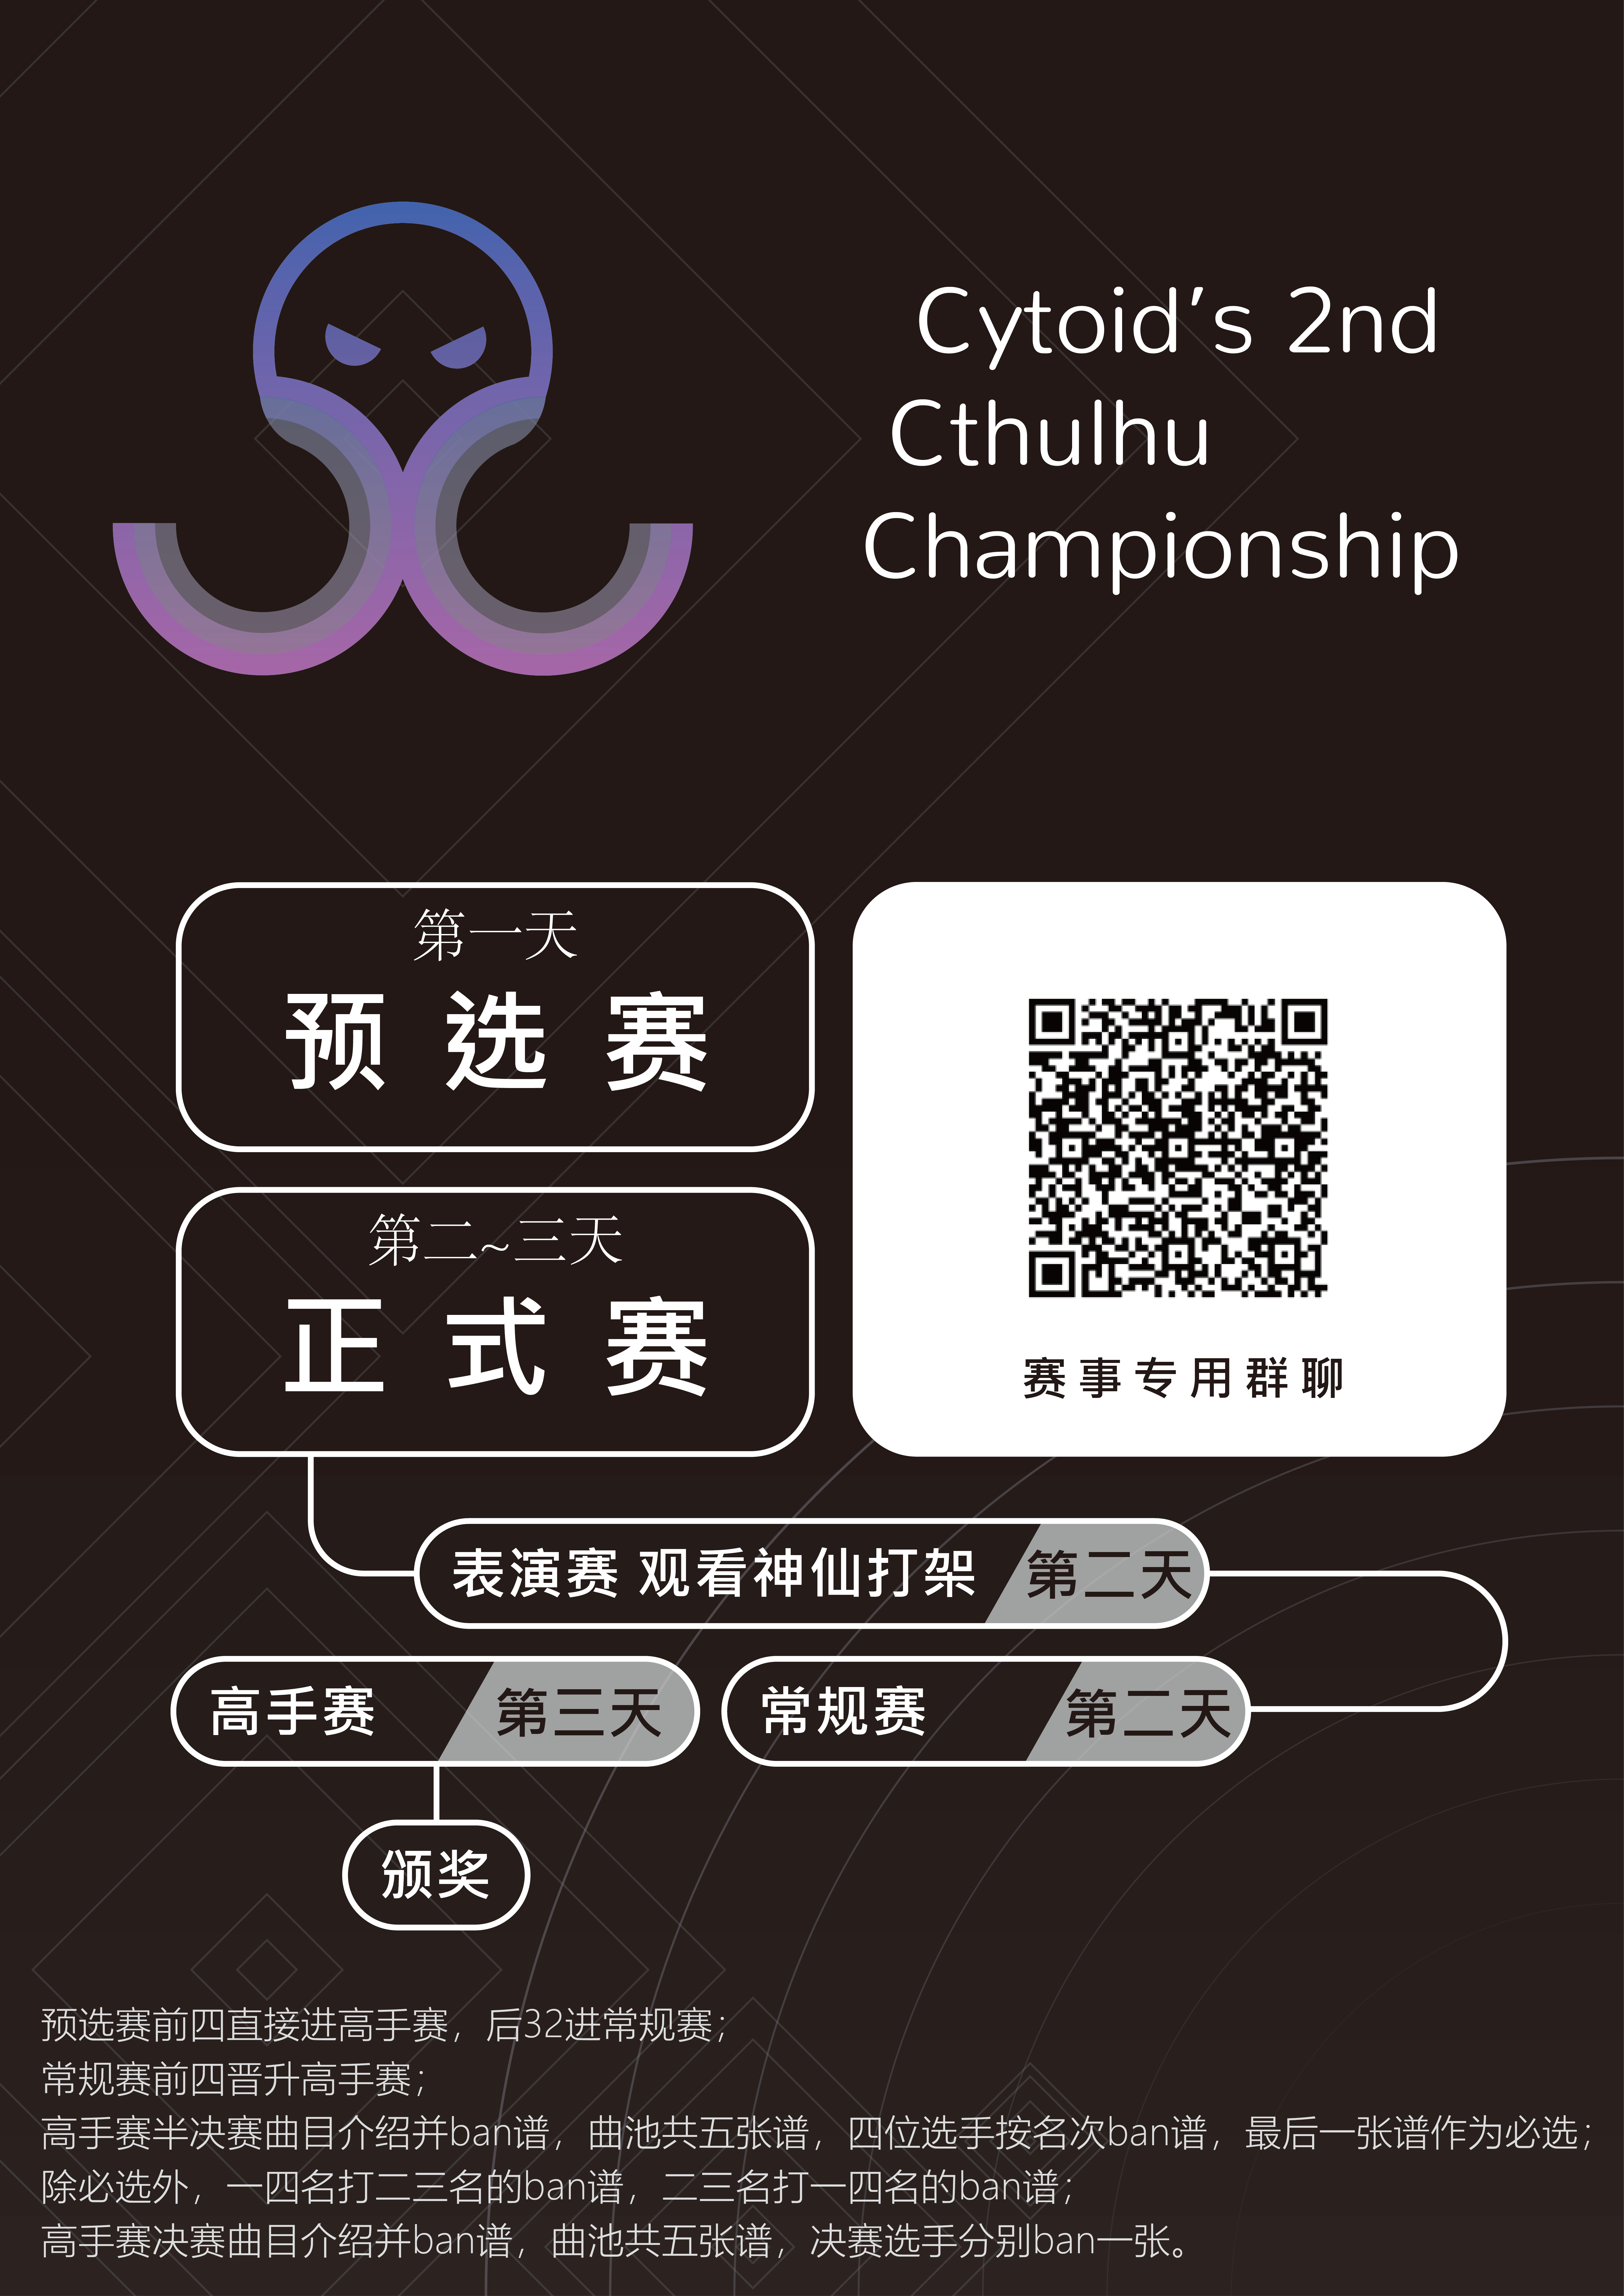 【已结束】第二届 Cytoid Cthulhu Championship 来了！